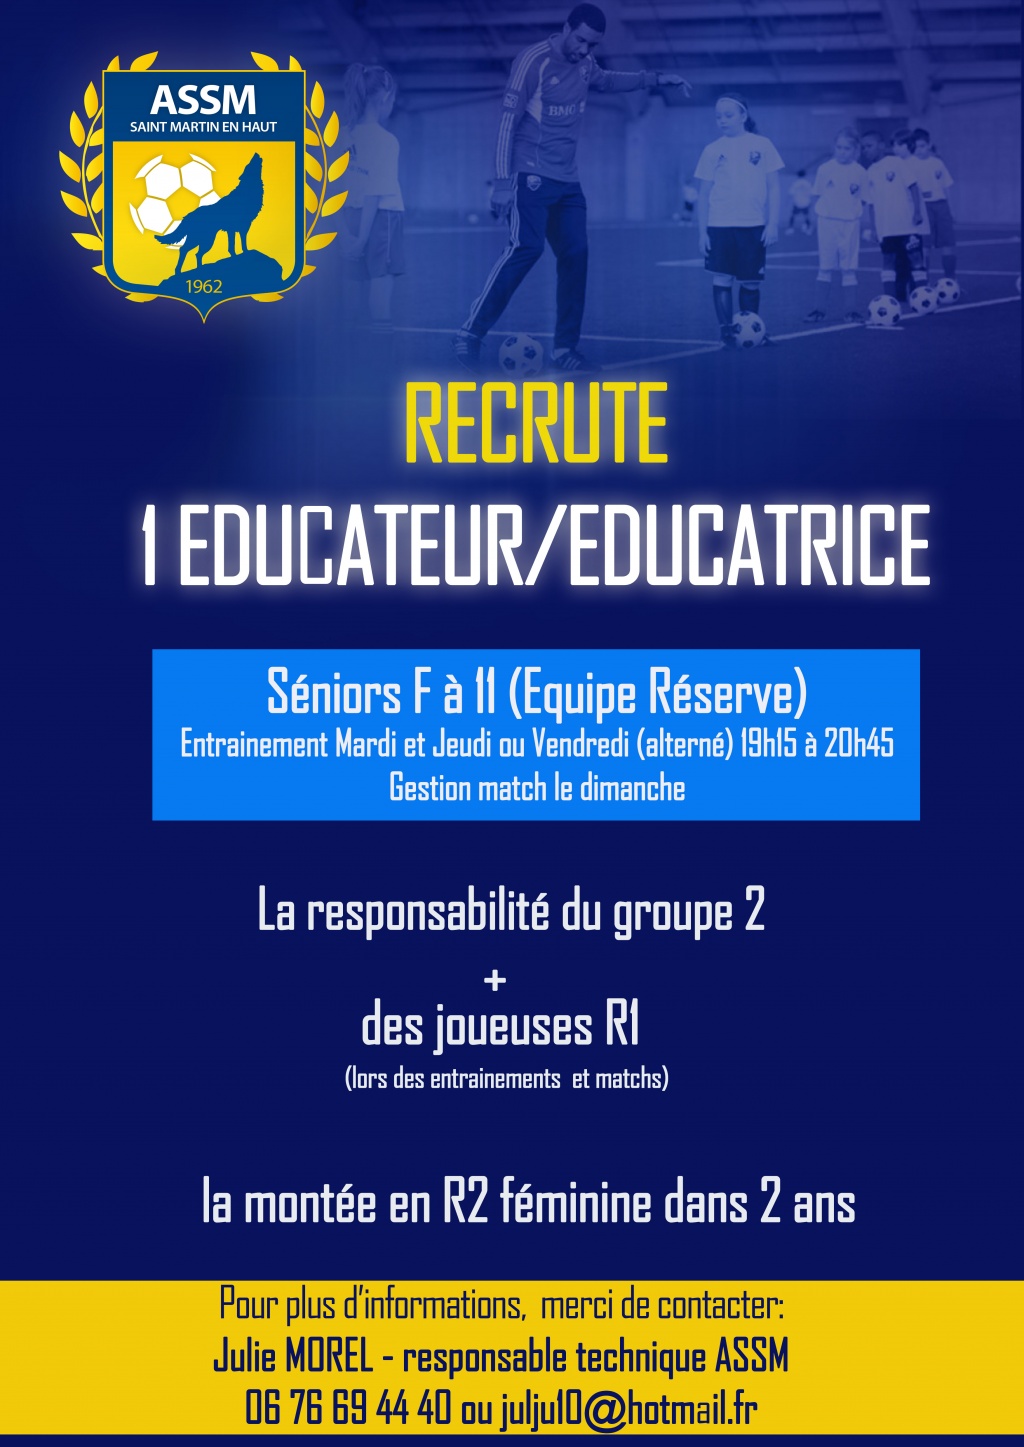 URGENT!!! Recherche 1 Educateur/Educatrice Equipe 2 Séniors Féminine